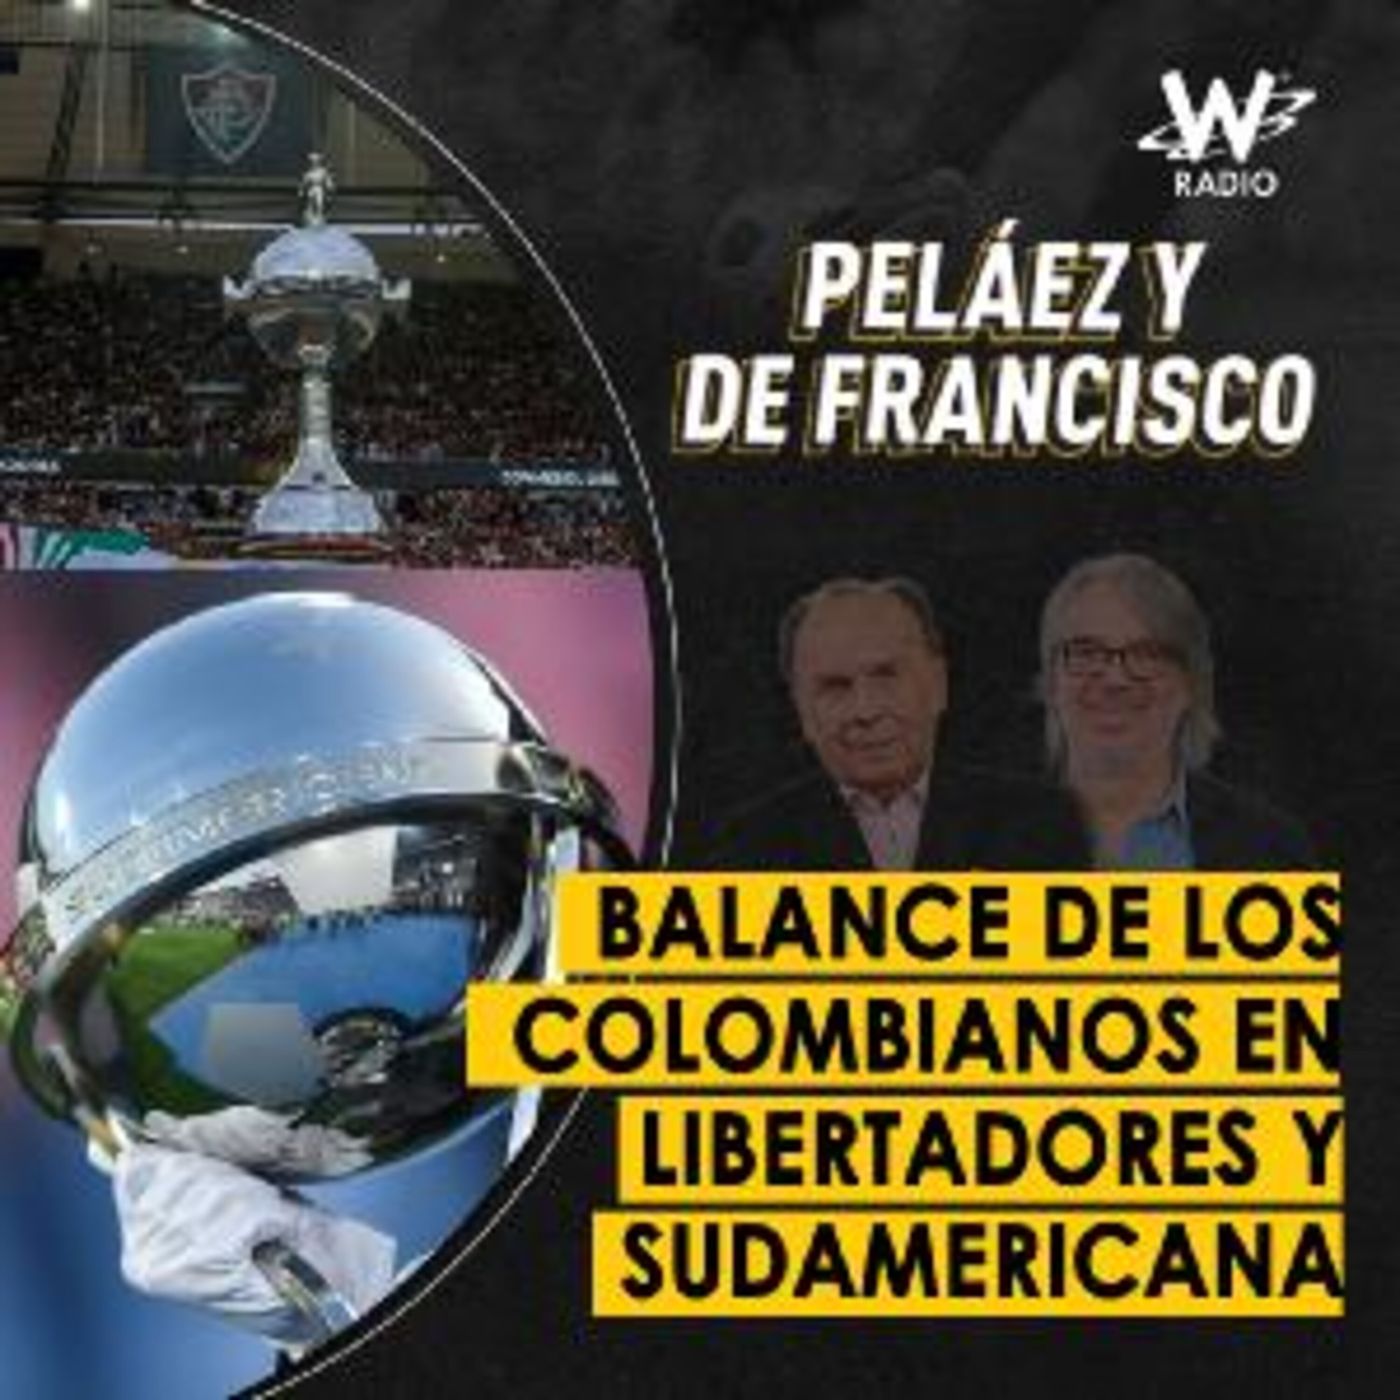 Balance de los colombianos en Libertadores y Sudamericana